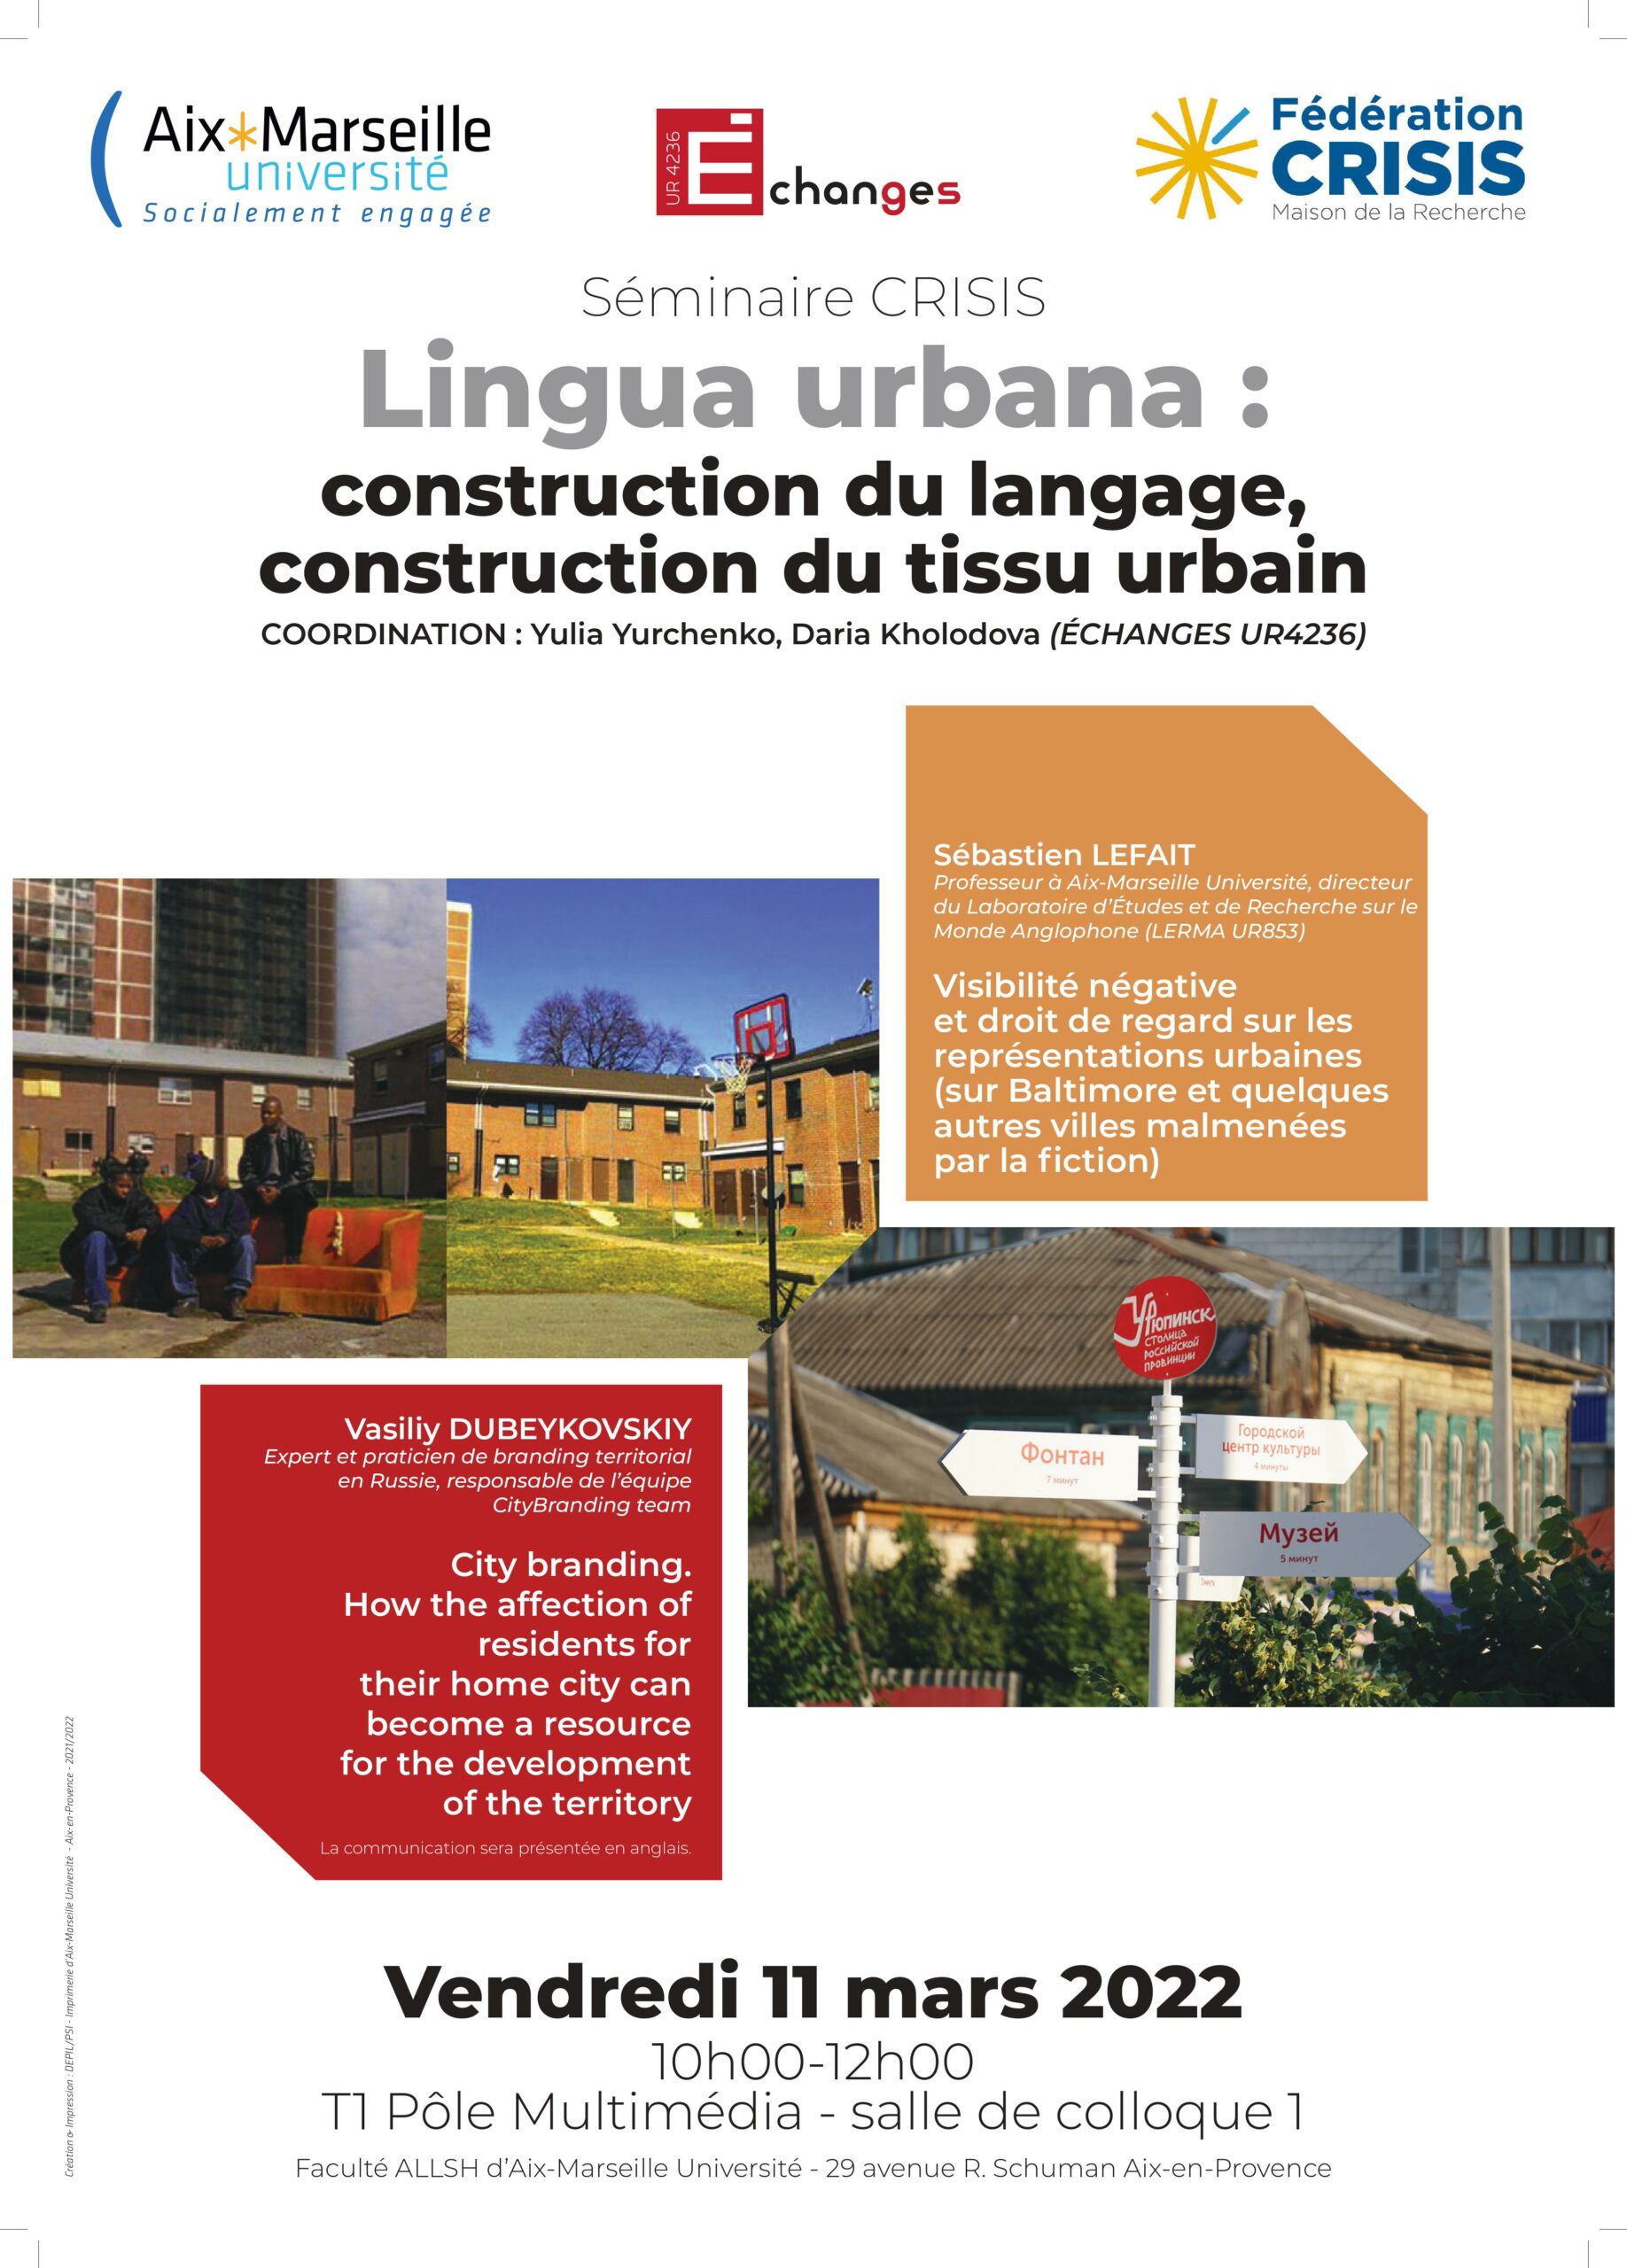 La 3e séance du séminaire CRISIS  » Lingua urbana : construction du langage, construction du tissus urbain « 